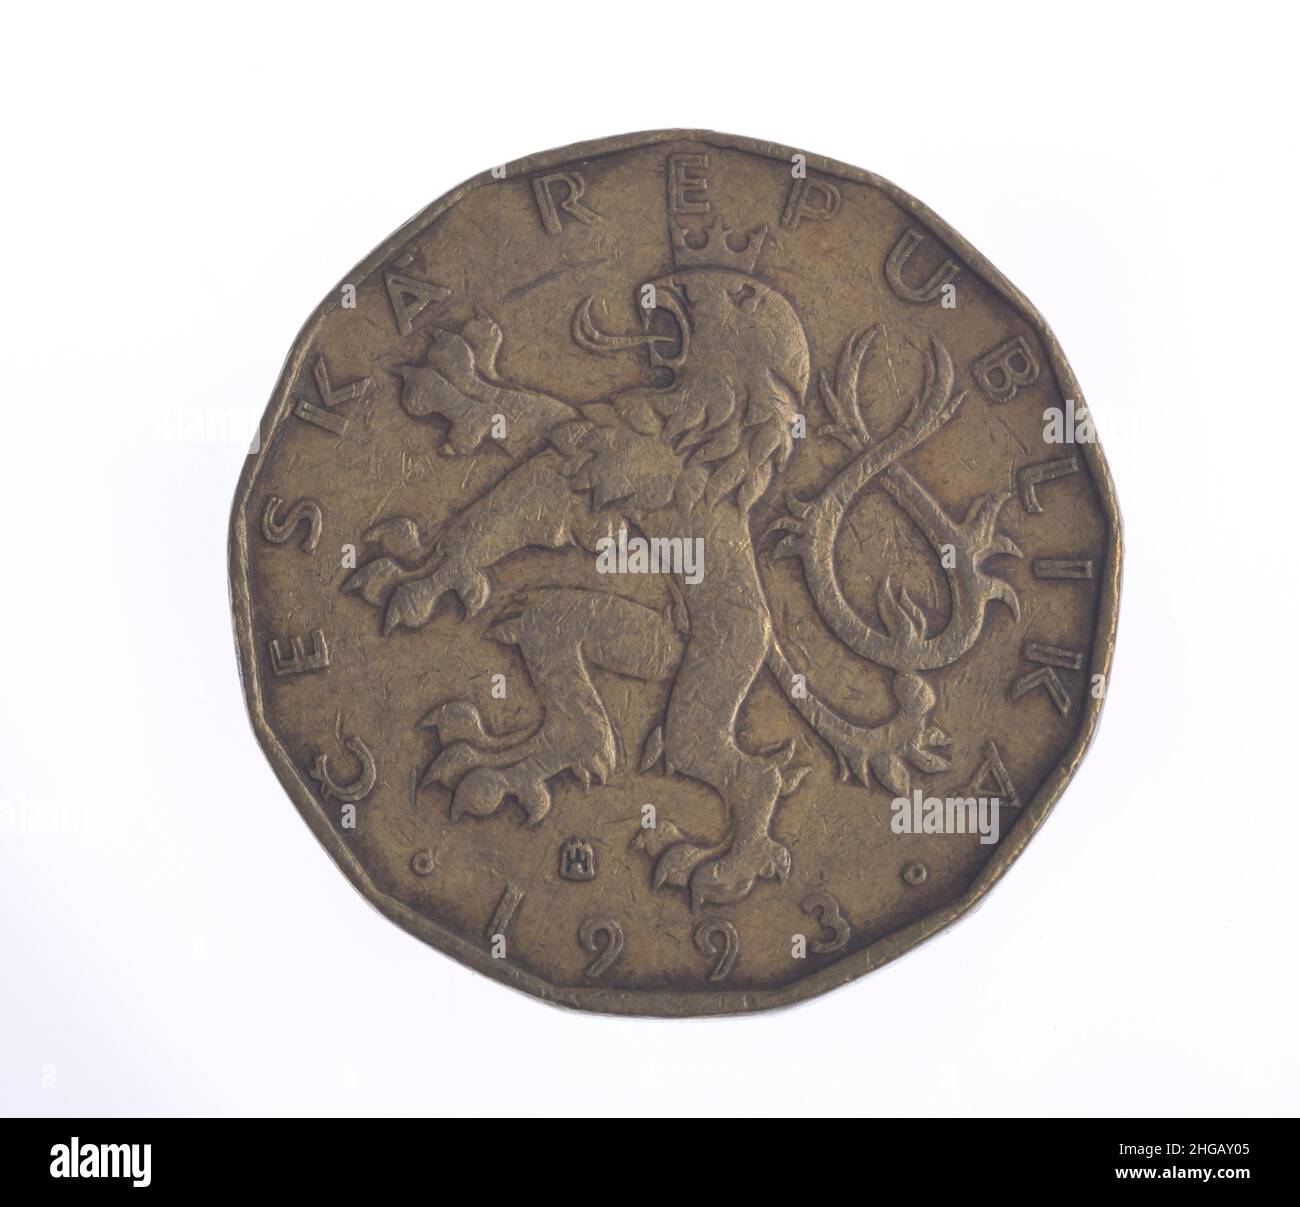 Coin, 20 couronnes, République Tchèque Banque D'Images